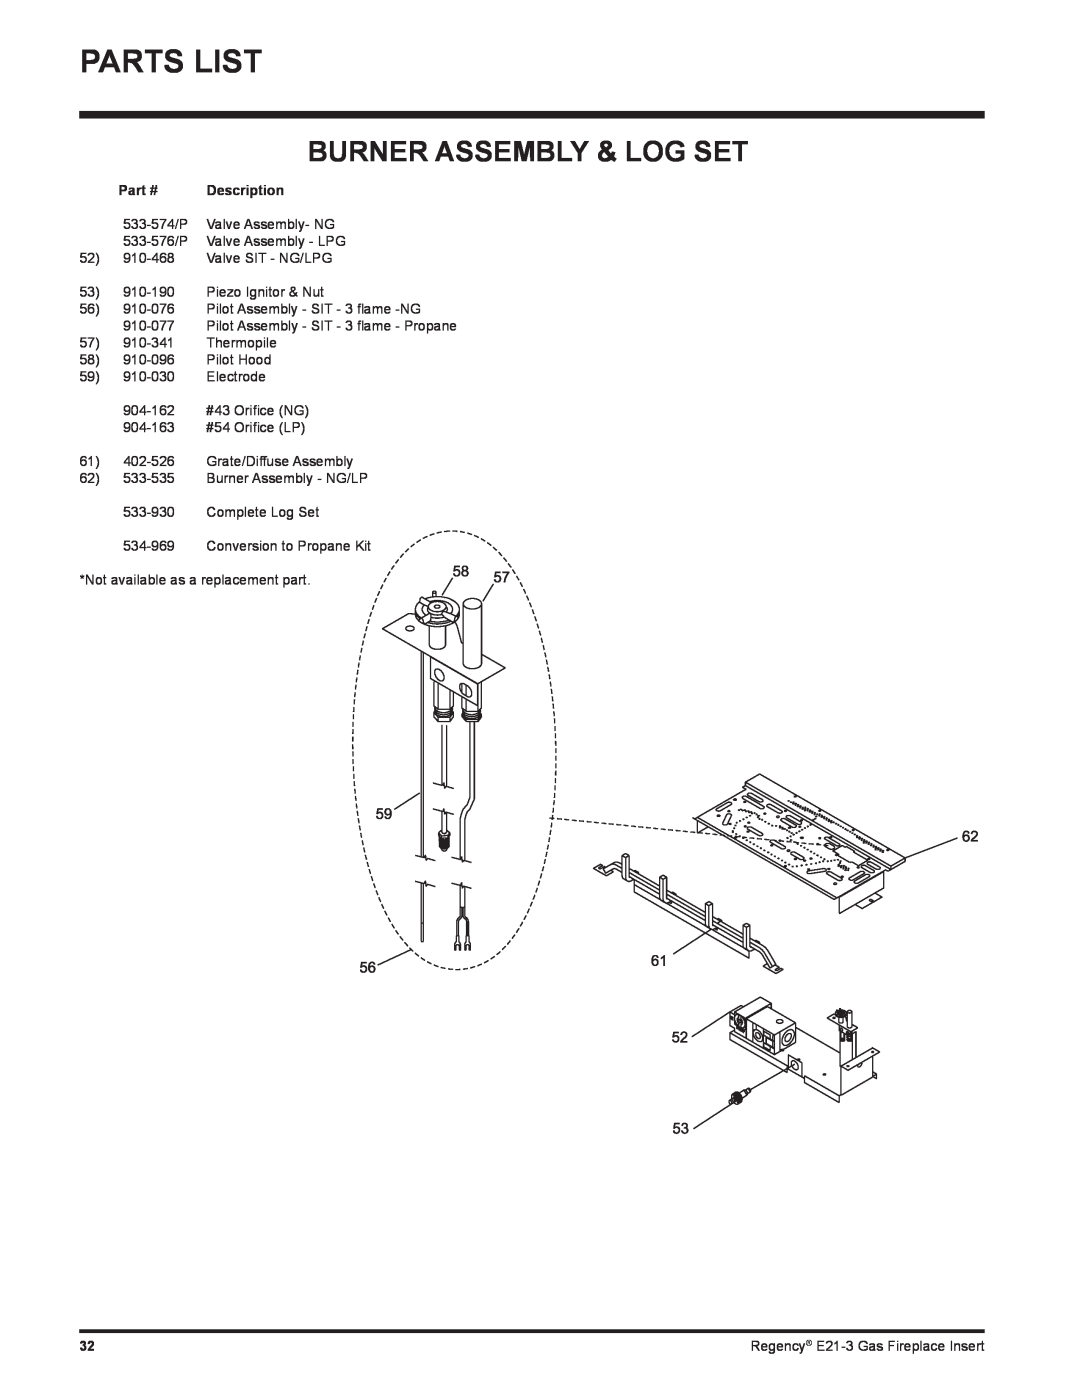 Regency E21-NG3, E21-LP3 installation manual Parts List, Burner Assembly & Log Set 